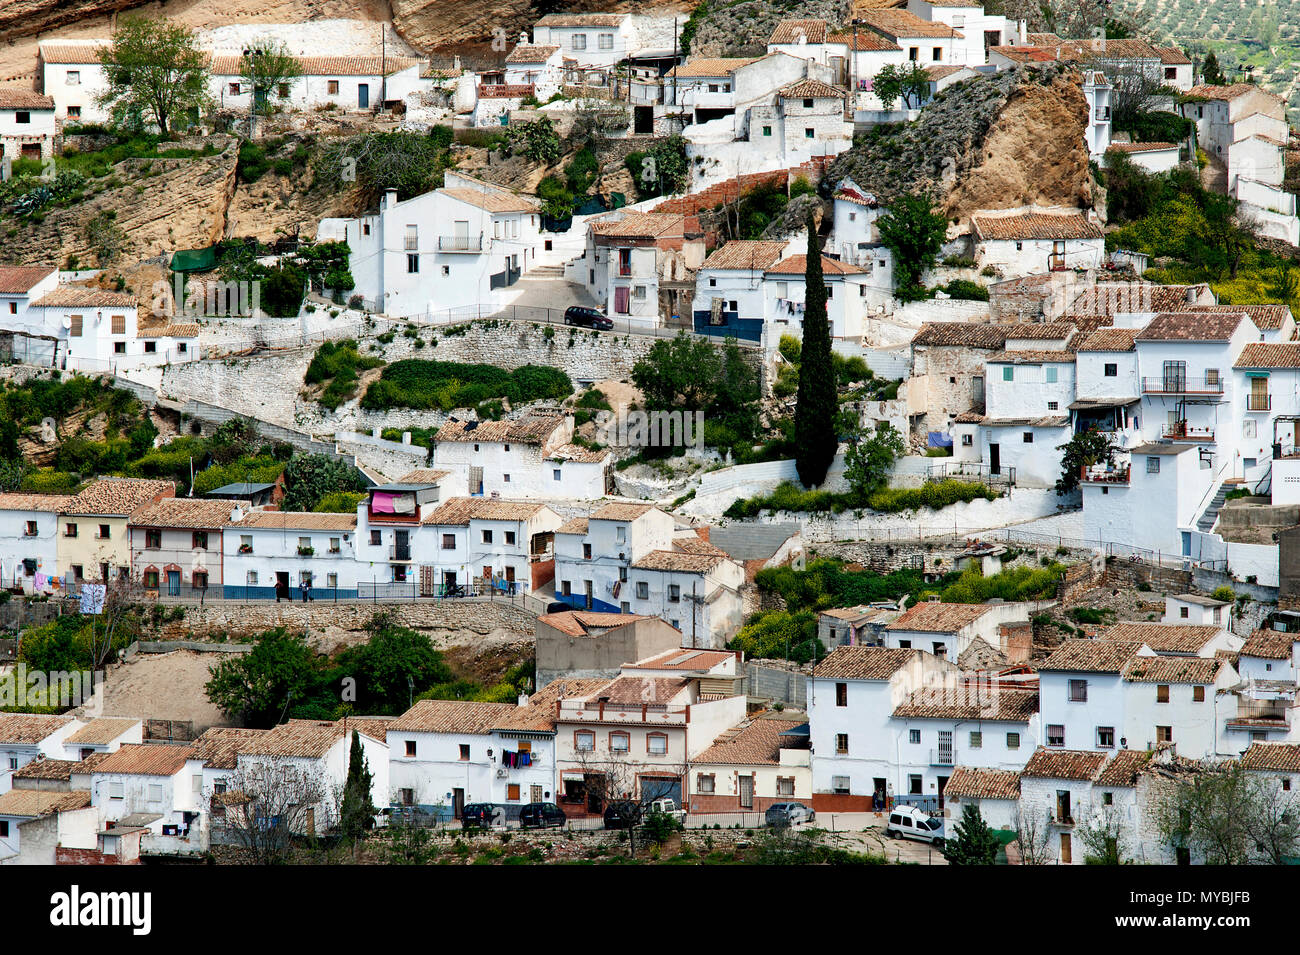 La pittoresque ville espagnole de Montefrio avec ses maisons traditionnelles blanchies à la chaux se soulever le côté d'une colline dans la région de Grenade en Andalousie. Banque D'Images